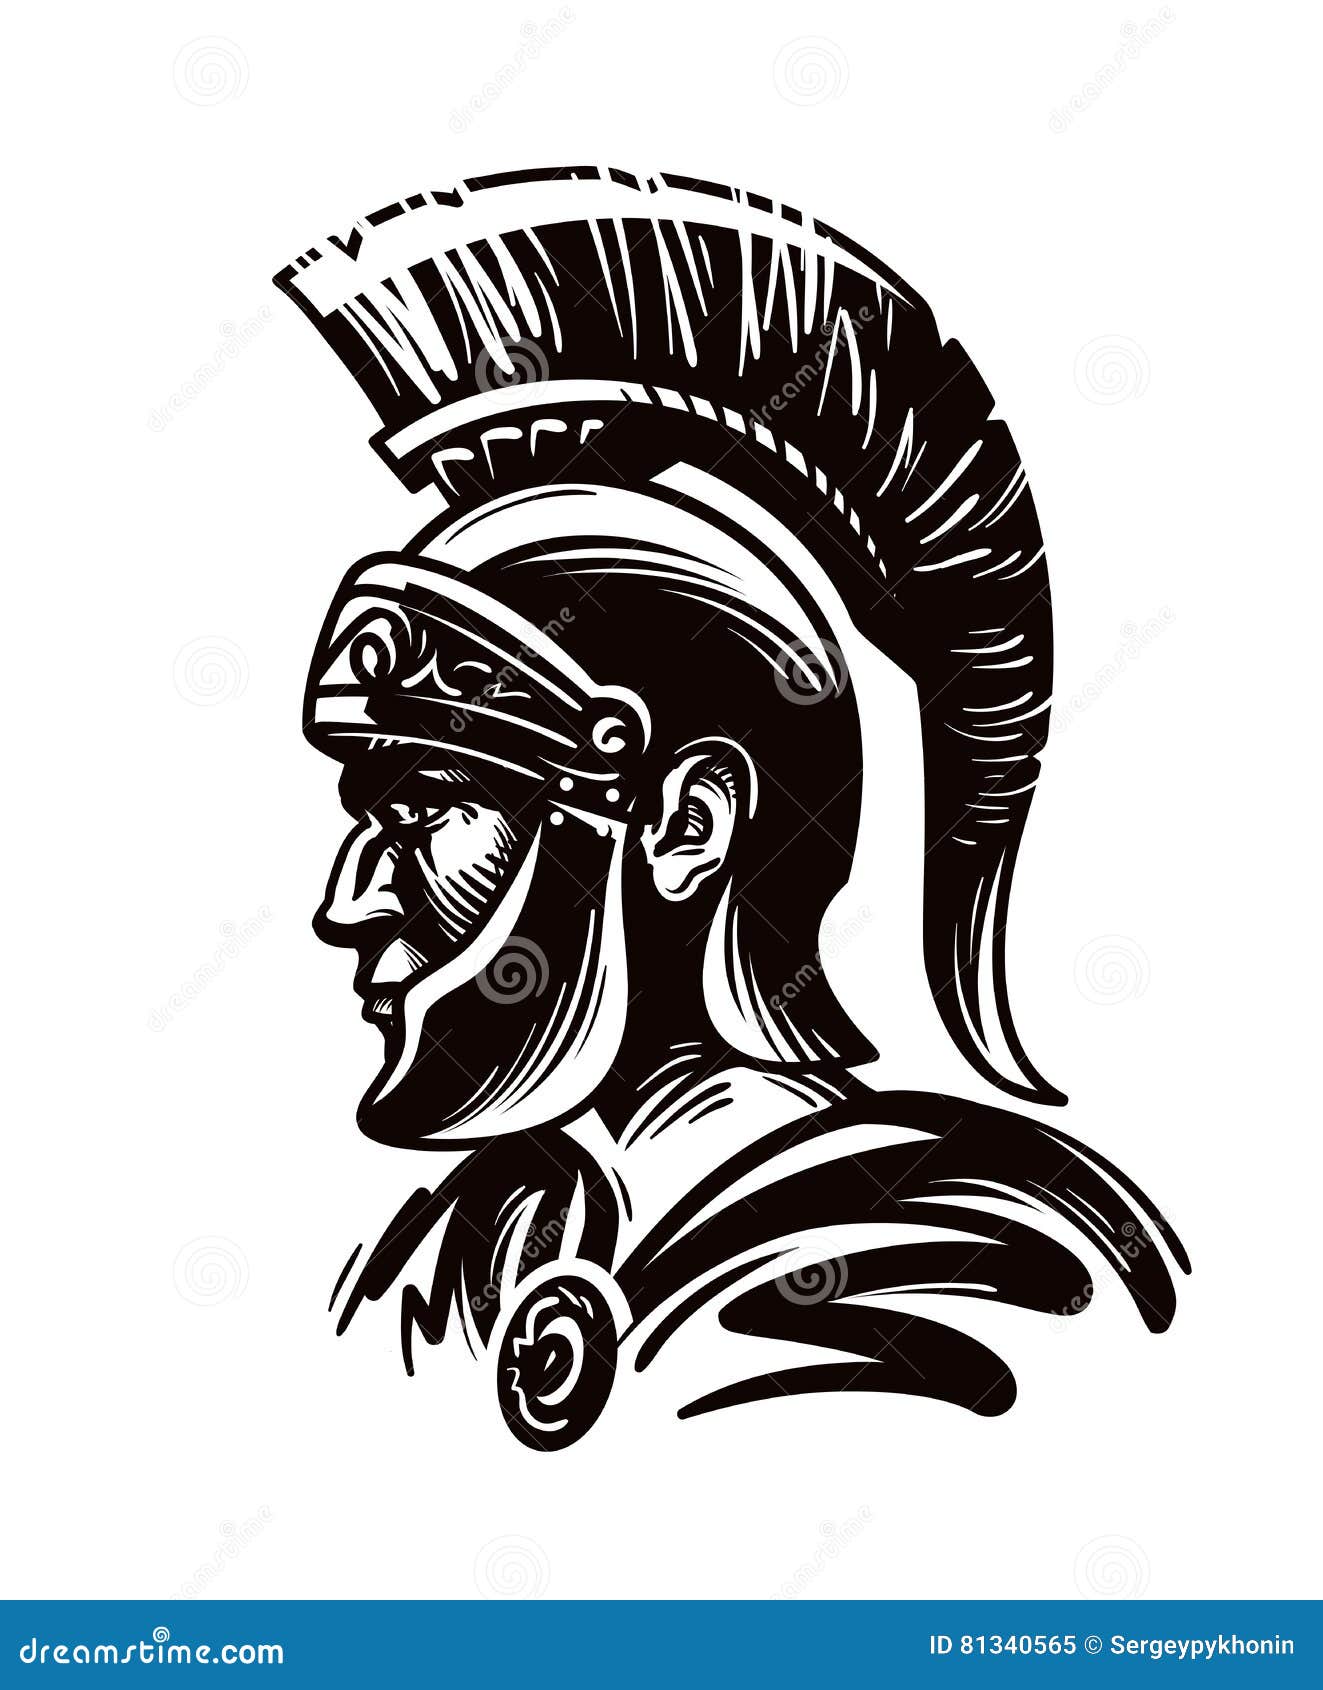 spartan warrior, gladiator or roman soldier.  